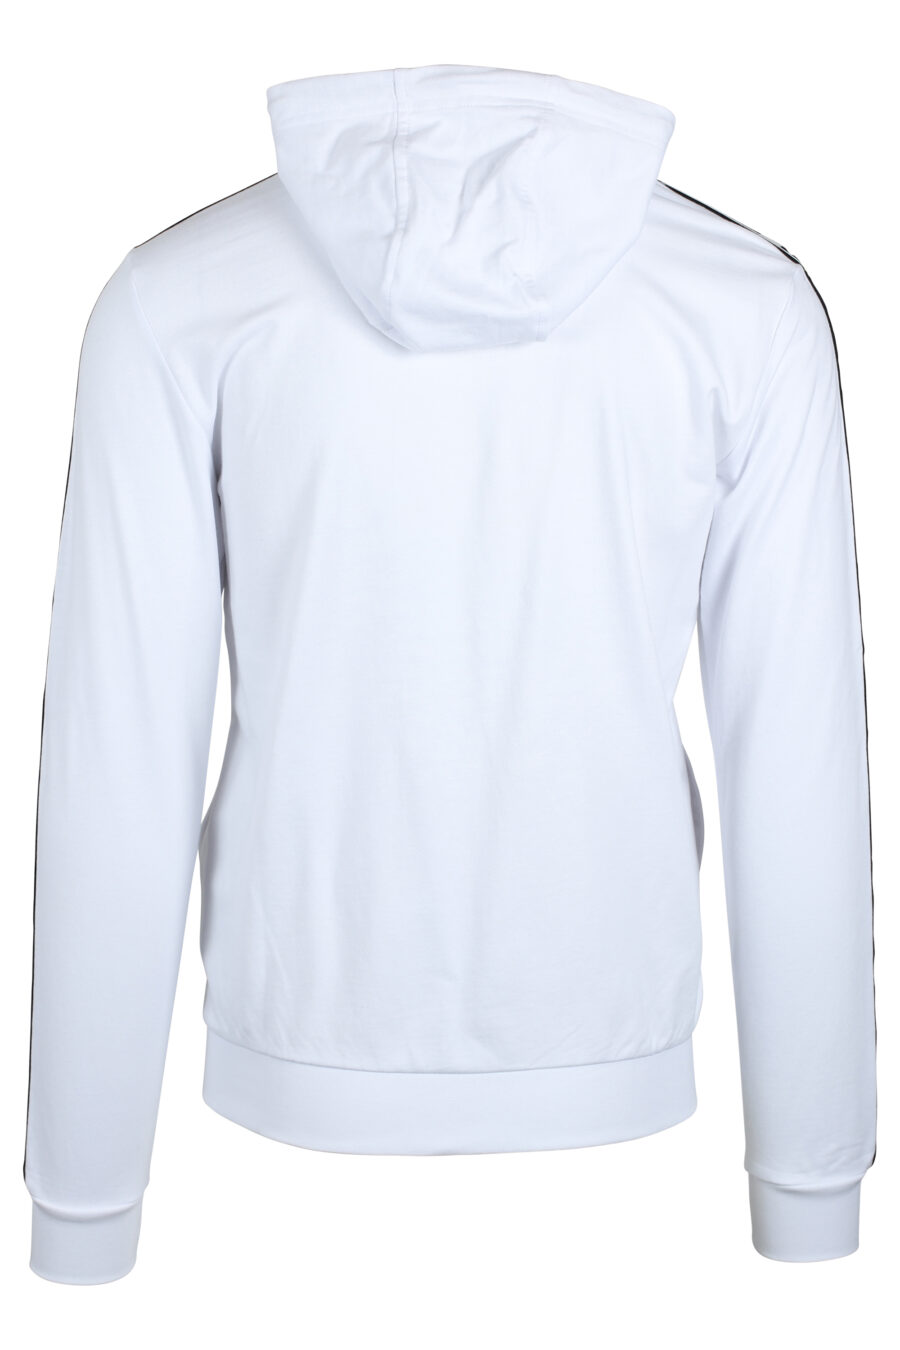 Sudadera blanca con capucha y cremallera con logo en cinta laterales - IMG 4761